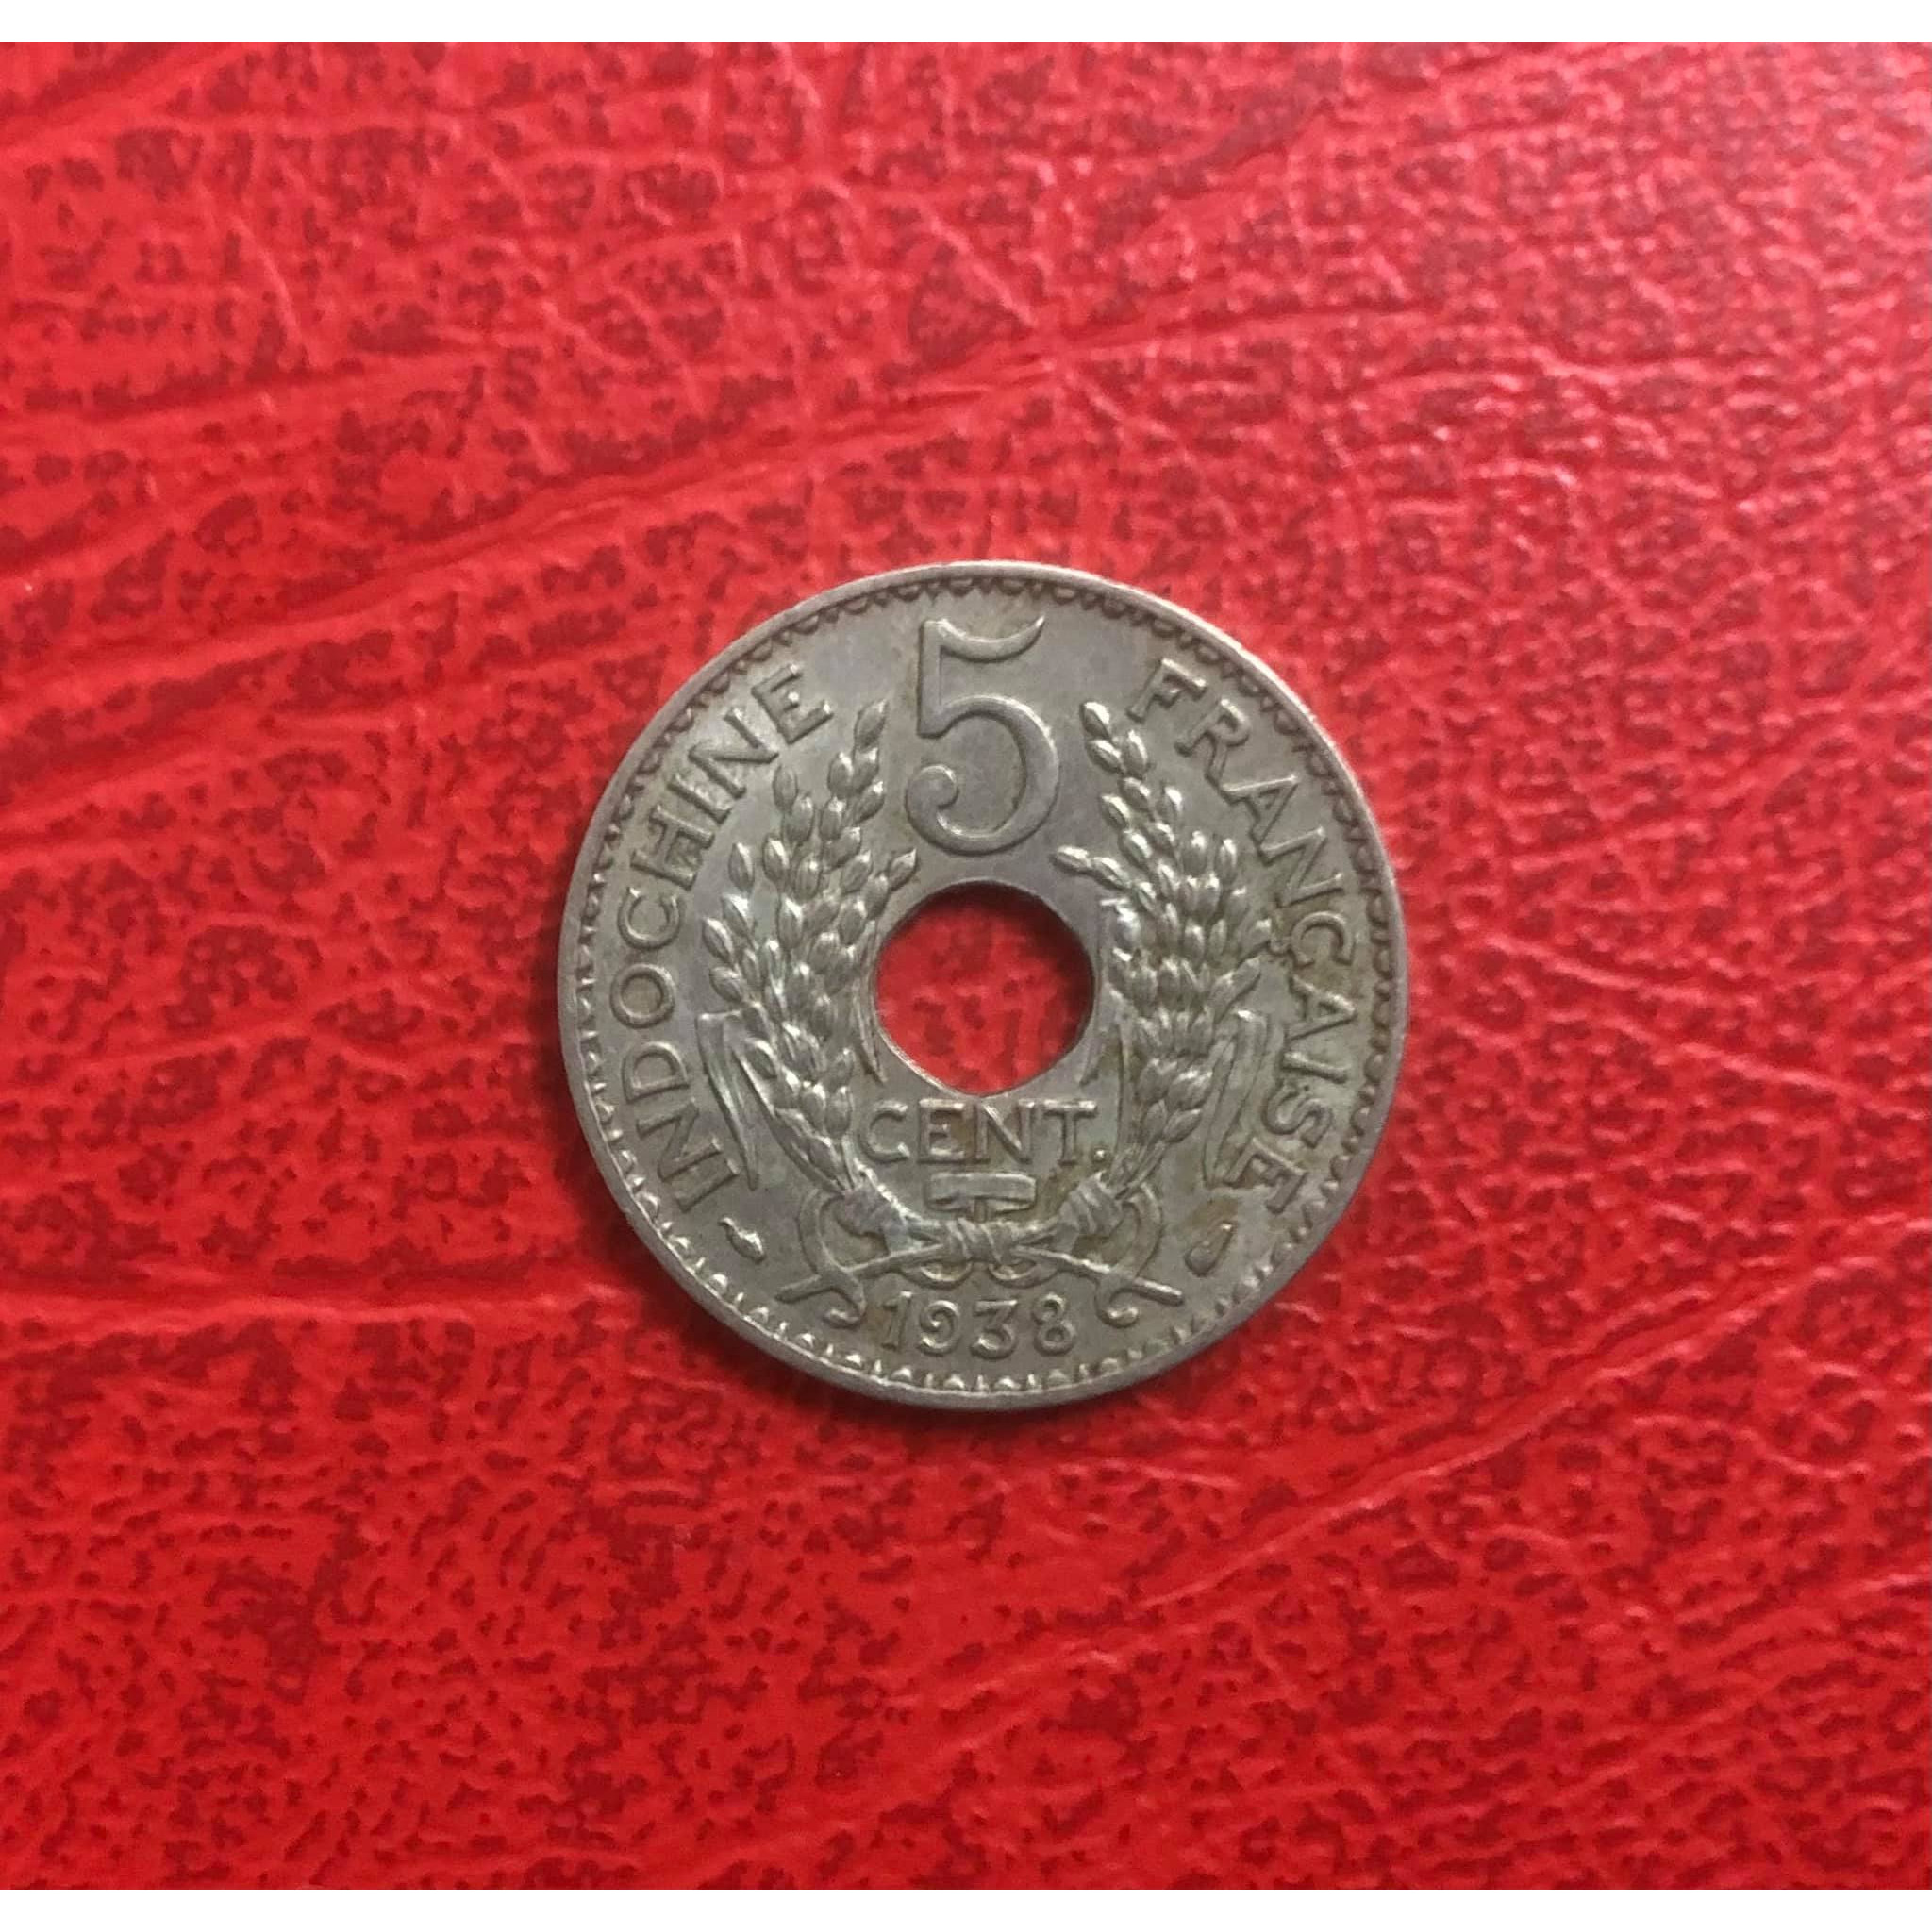 Đồng xu 5 cent Nữ thần 193x Đông Dương sưu tầm